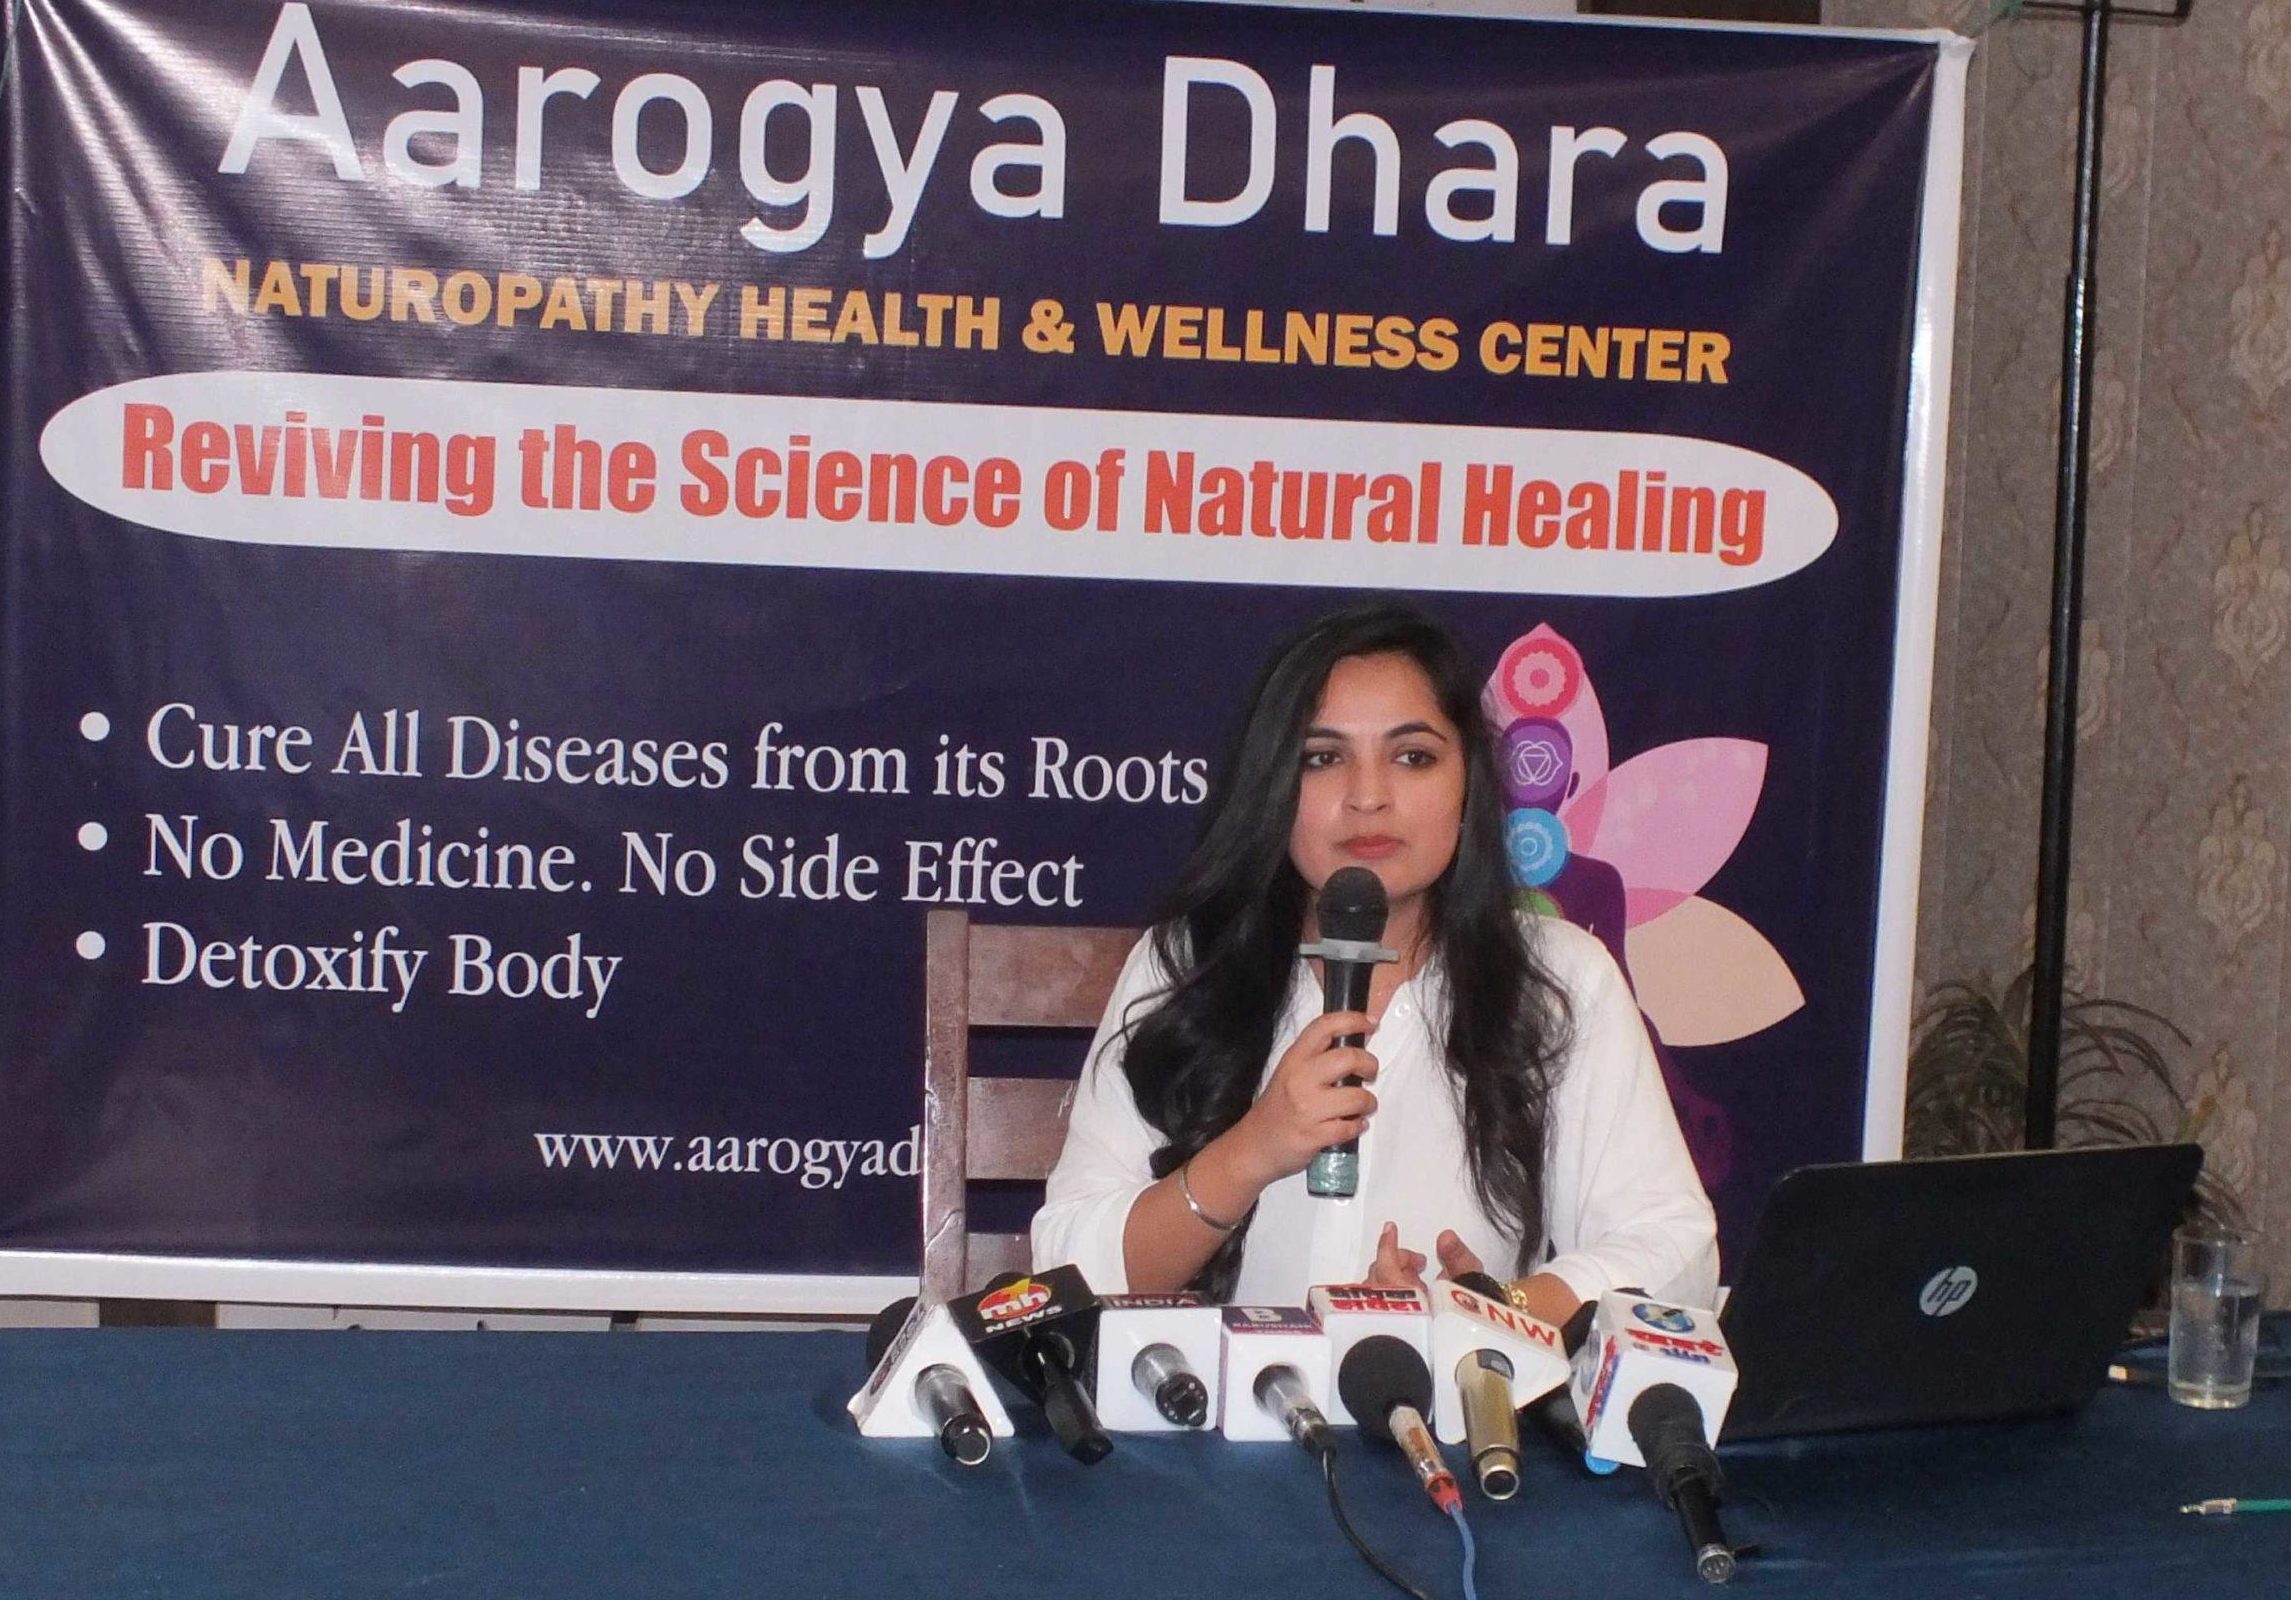 Arogya Dhara Naturopathy Center unveiled